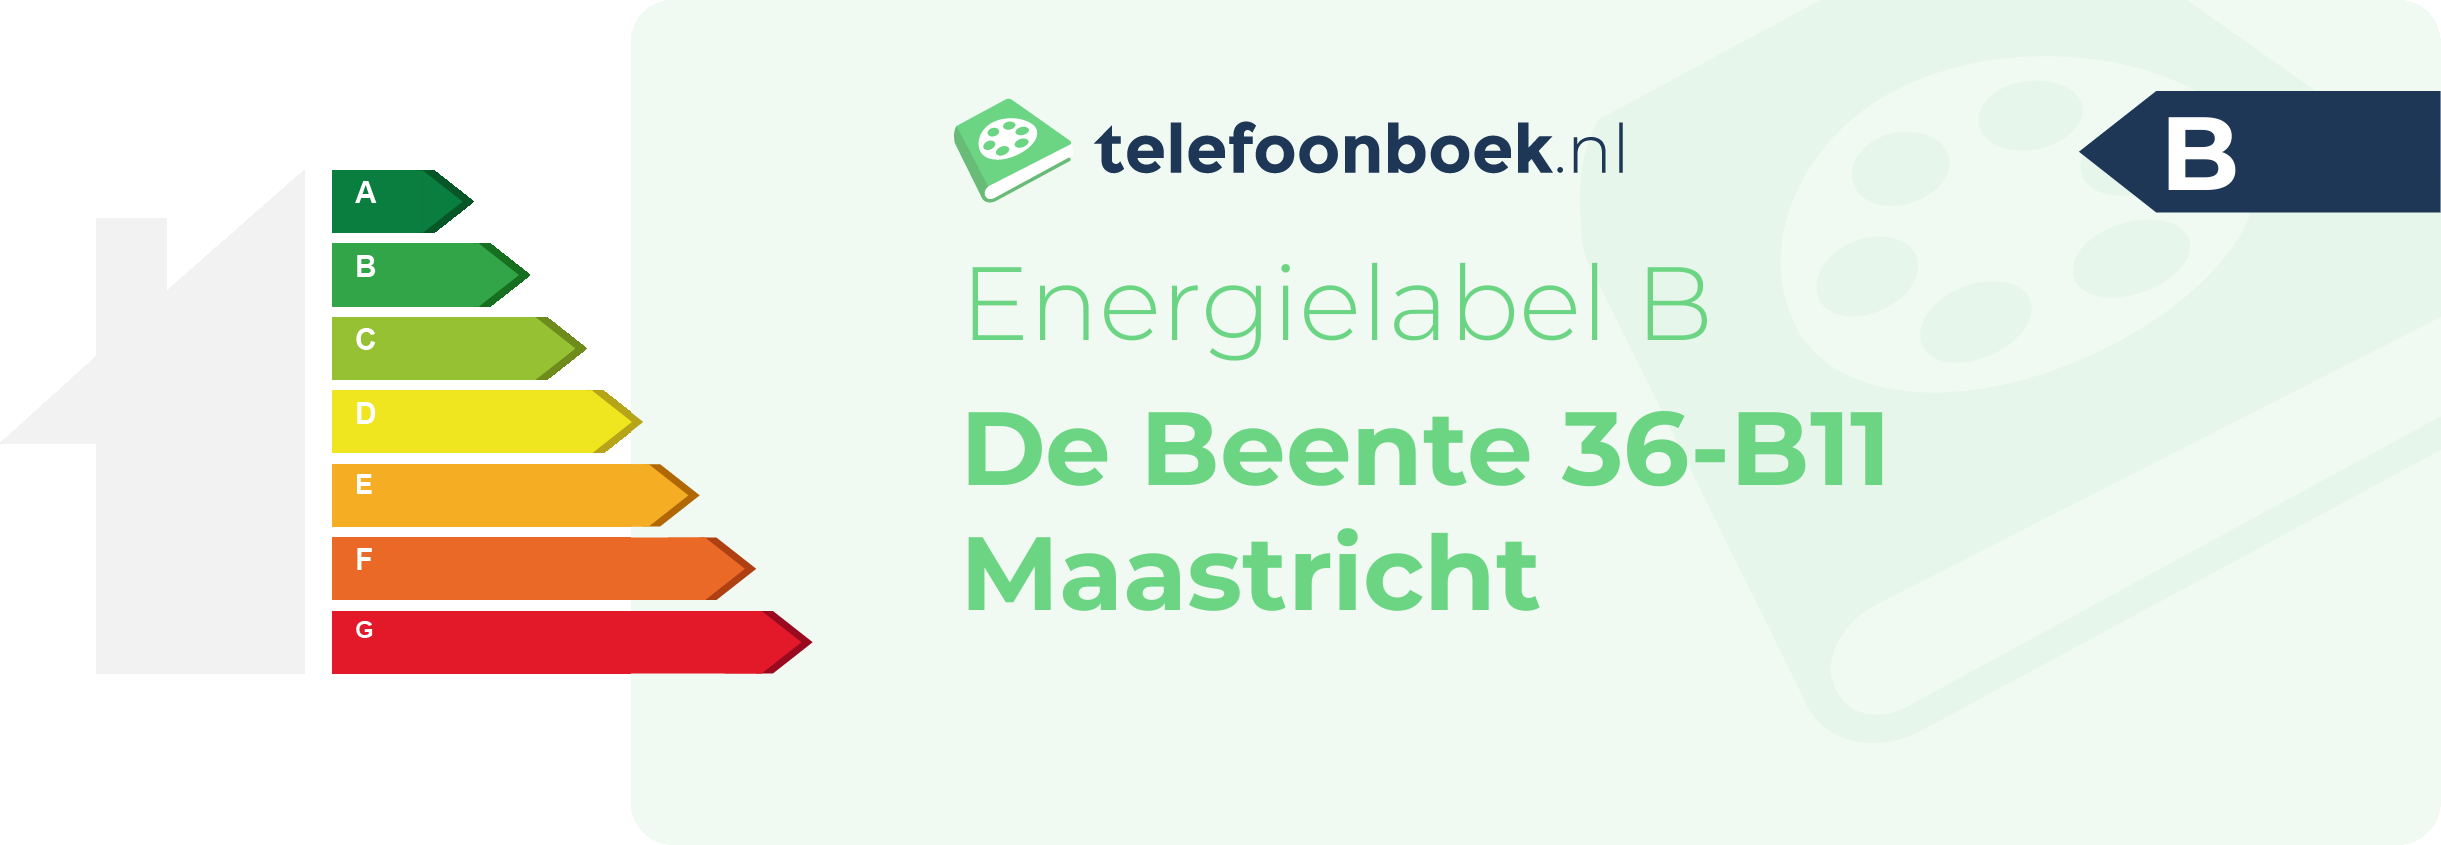 Energielabel De Beente 36-B11 Maastricht